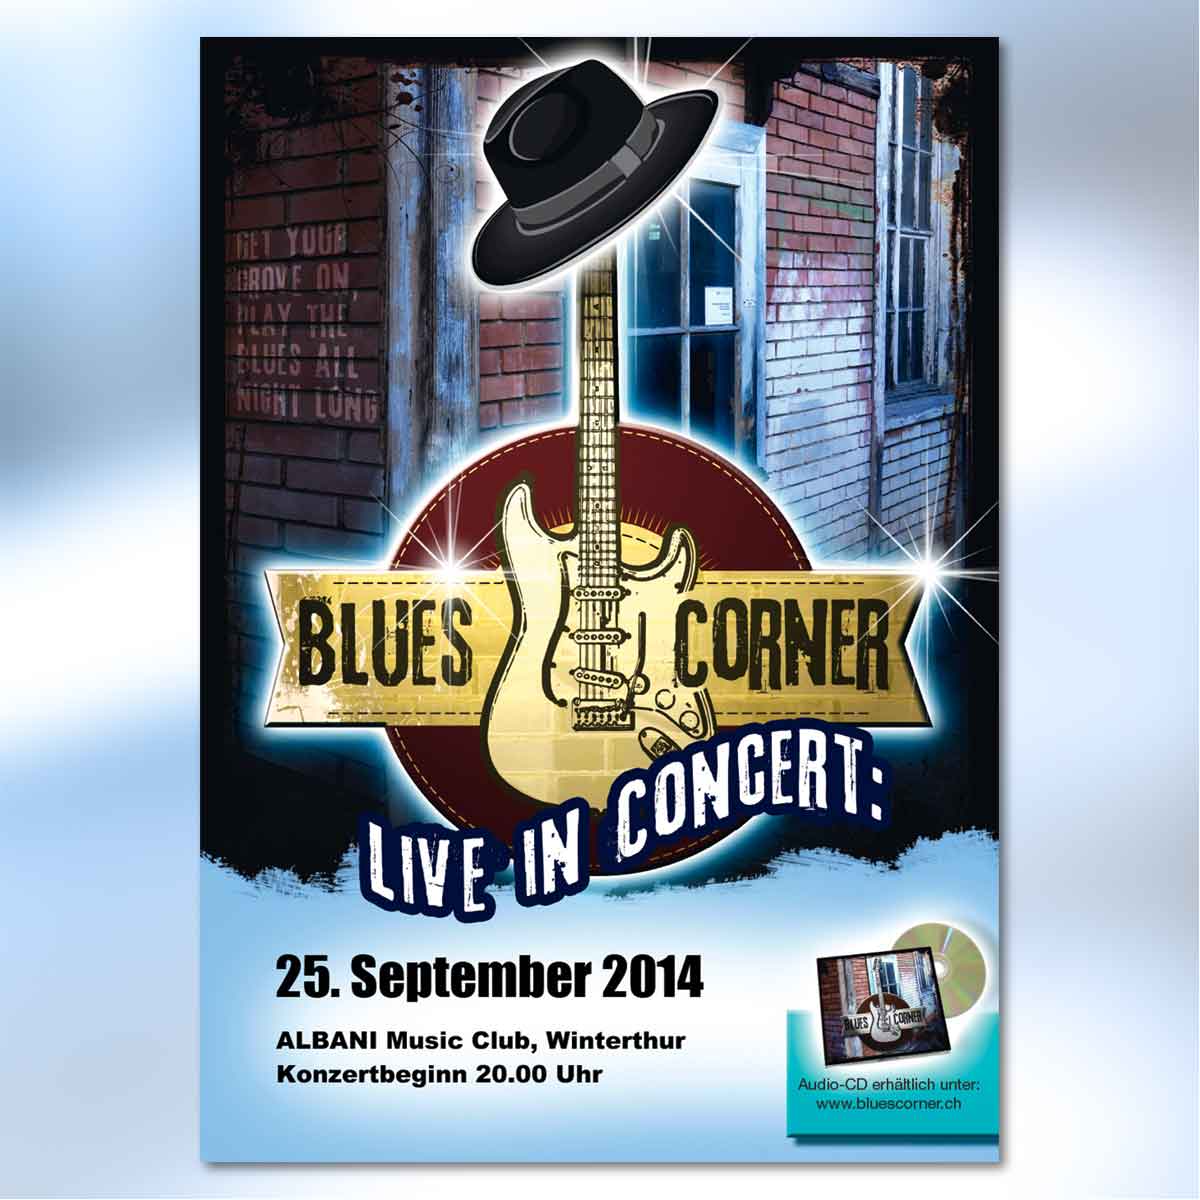 Plakat für die Band Bluescorner